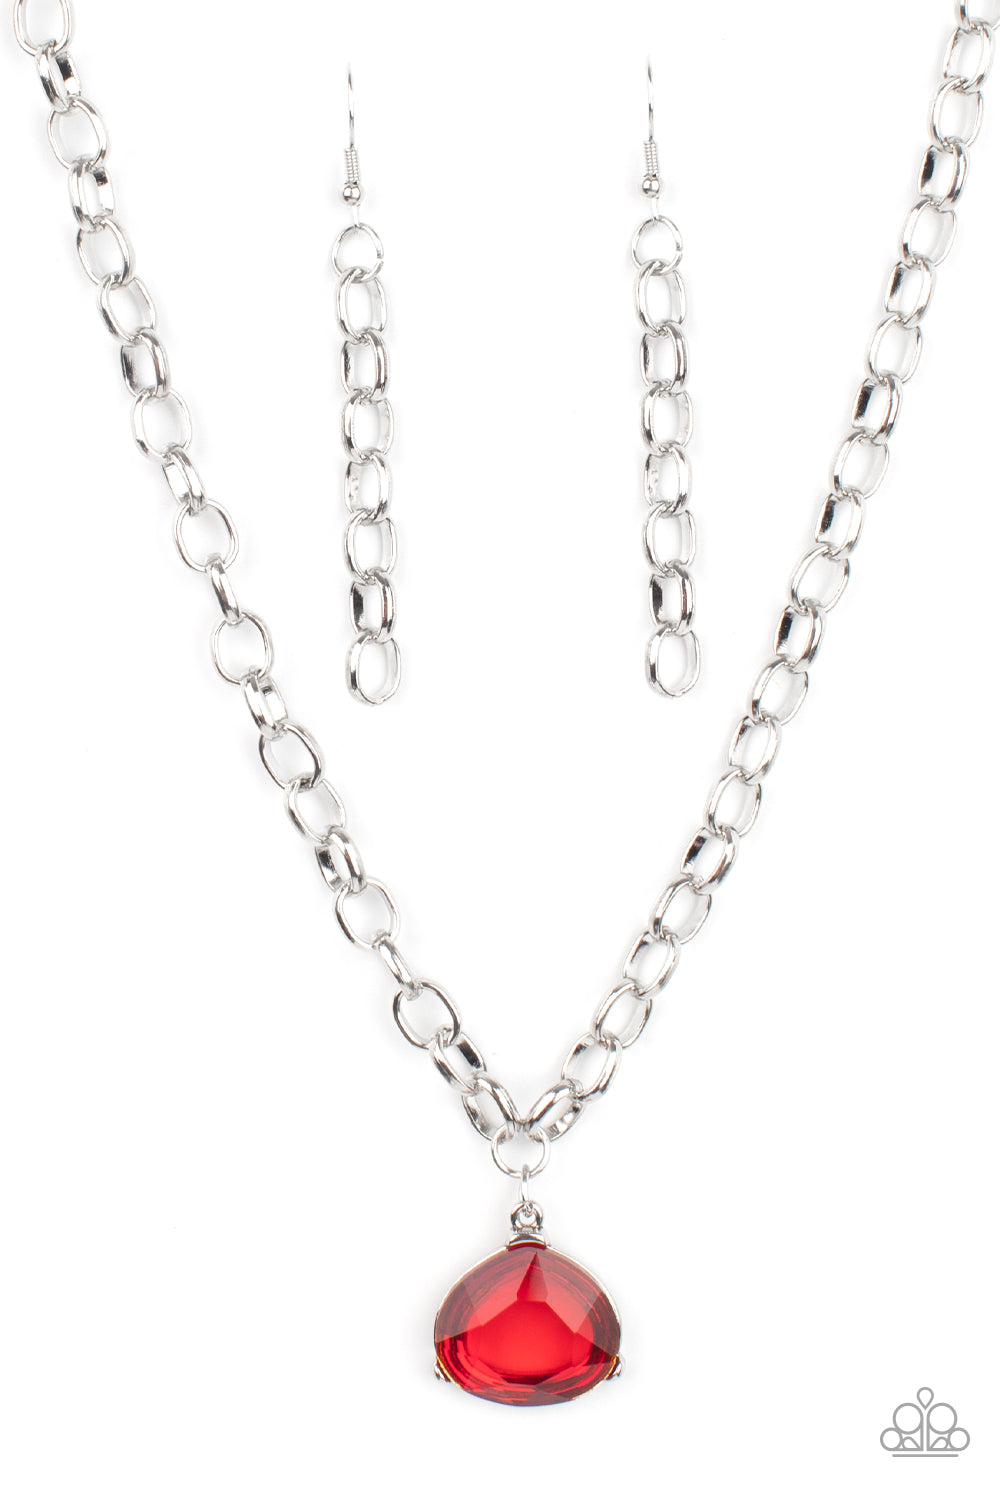 925 Silver Ruby Necklace Pendant Victoria| Alibaba.com